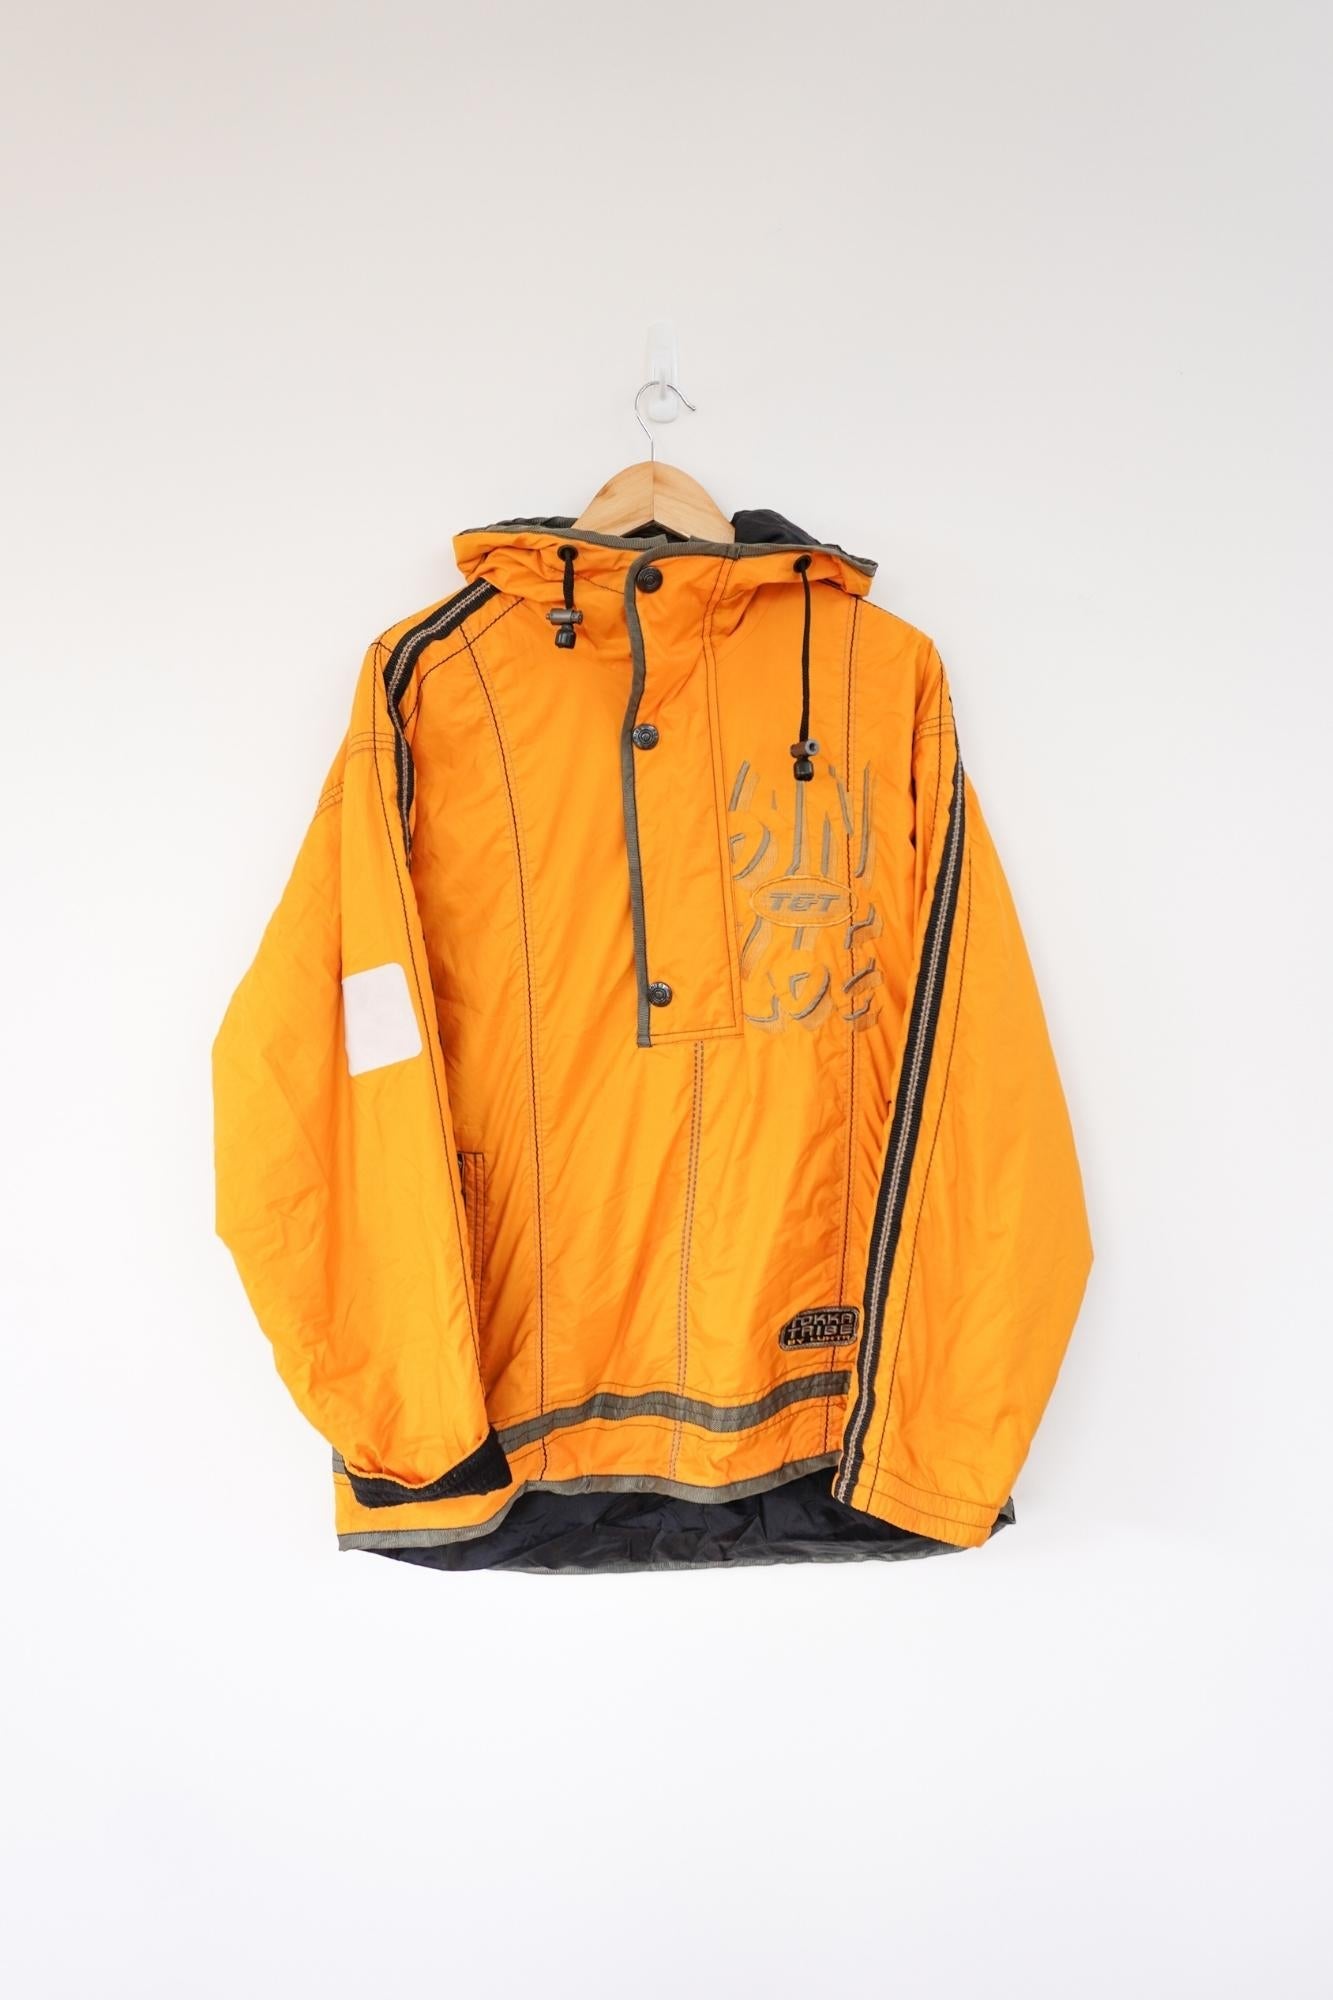 Tokka Tribe Yellow Vintage Ski Jacket